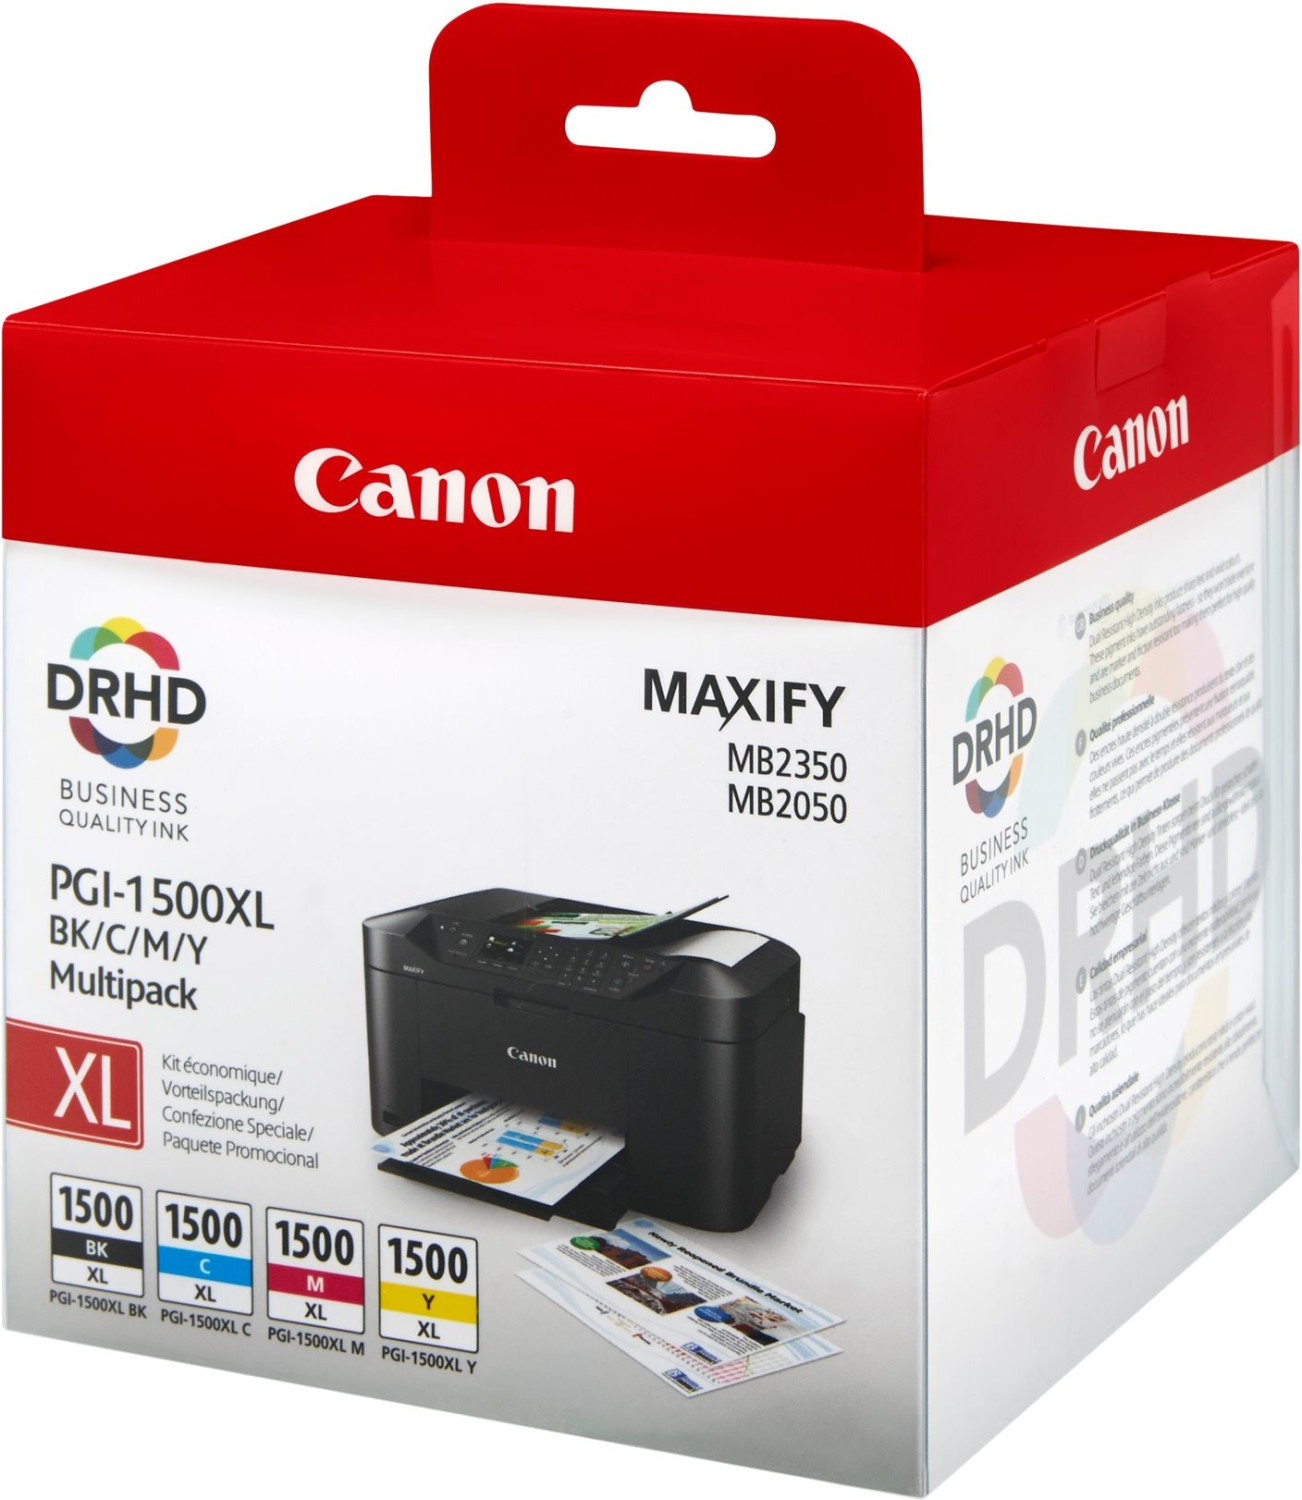 Cartouche d'encre Canon MAXIFY MB2050 pas cher